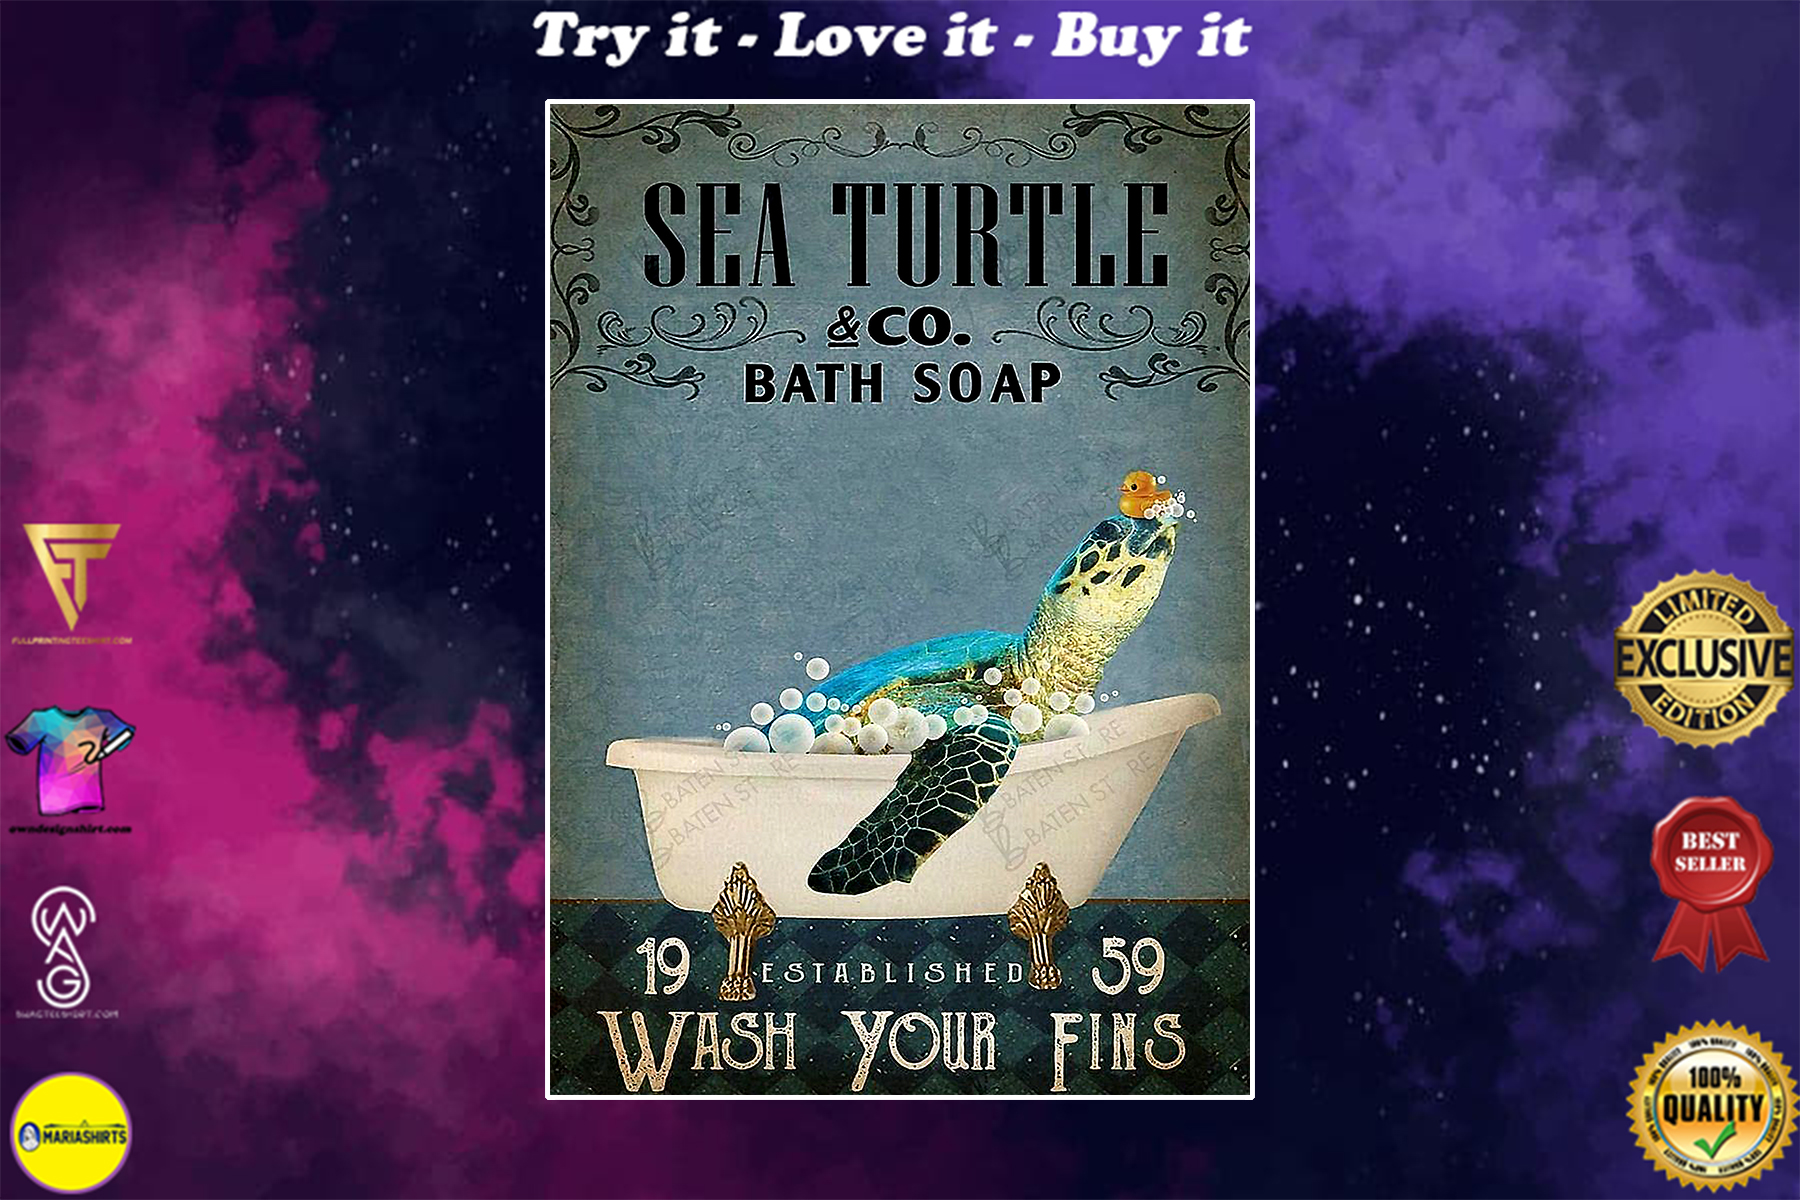 sea turtle co bath soap wash your fins vintage poster